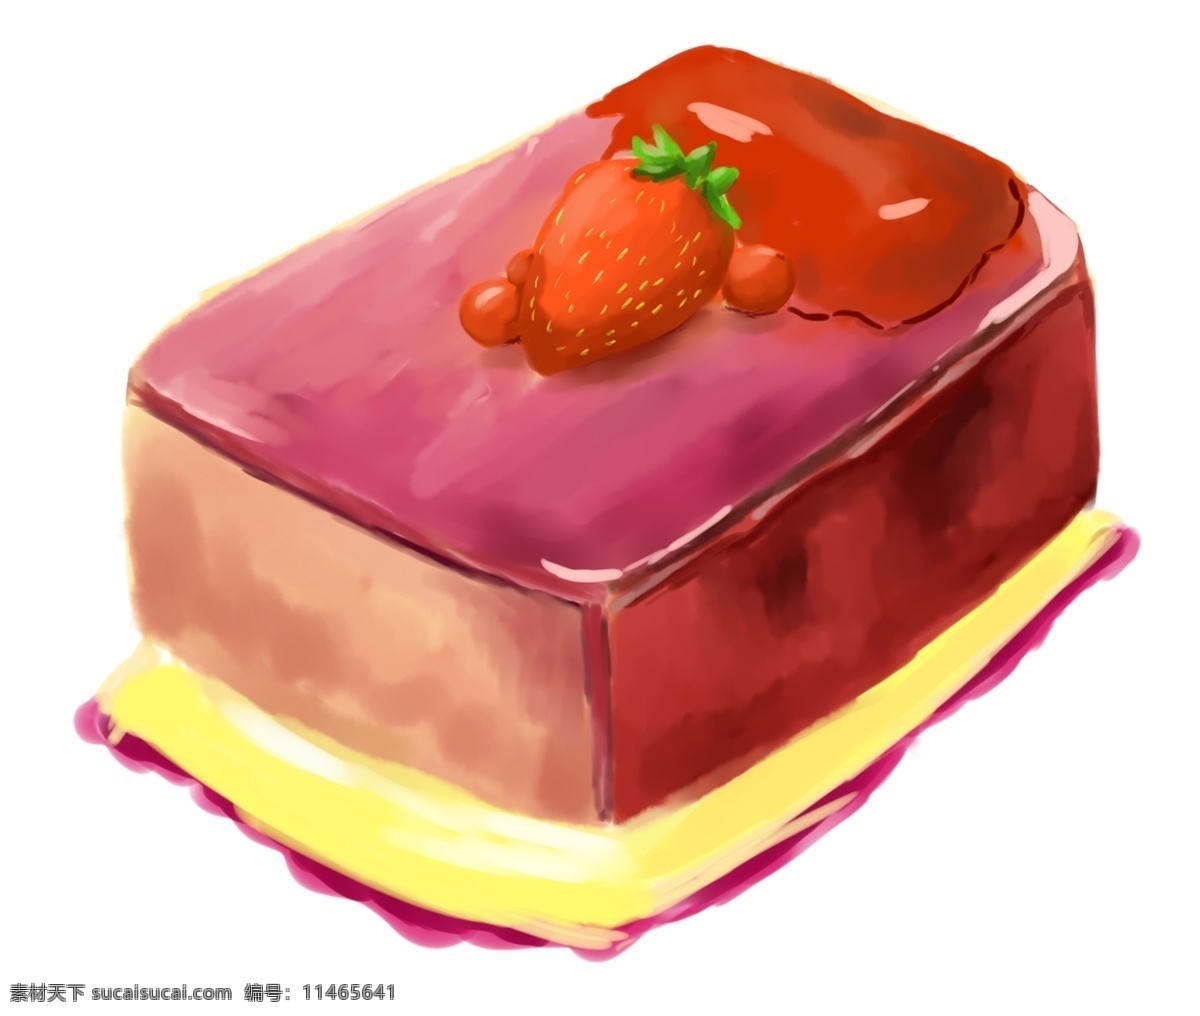 手绘 食品 蛋糕 果冻 装饰 儿童节 61 母亲节 零食 草莓 食物 甜点 深色色调 番茄酱 黄油 小番茄